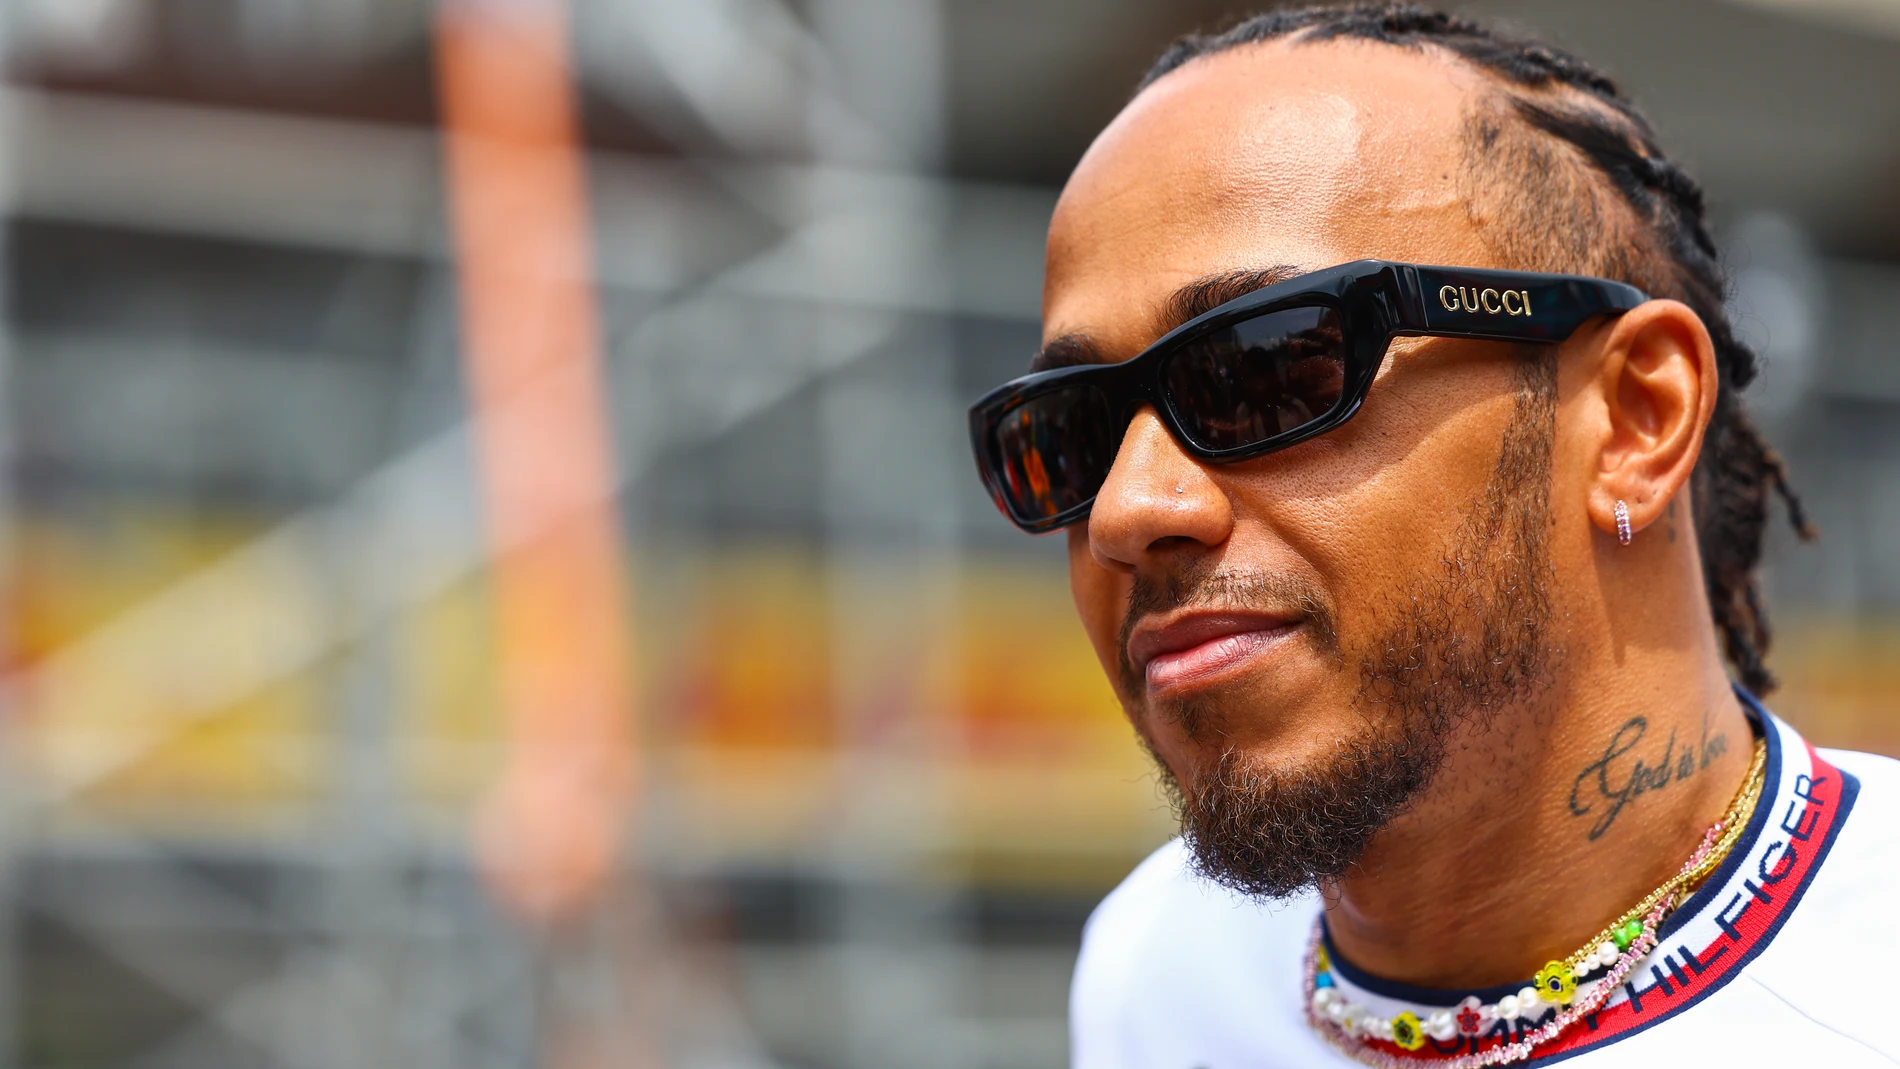 Lewis Hamilton desvela el circuito en el que Mercedes sí podrá luchar con Red Bull